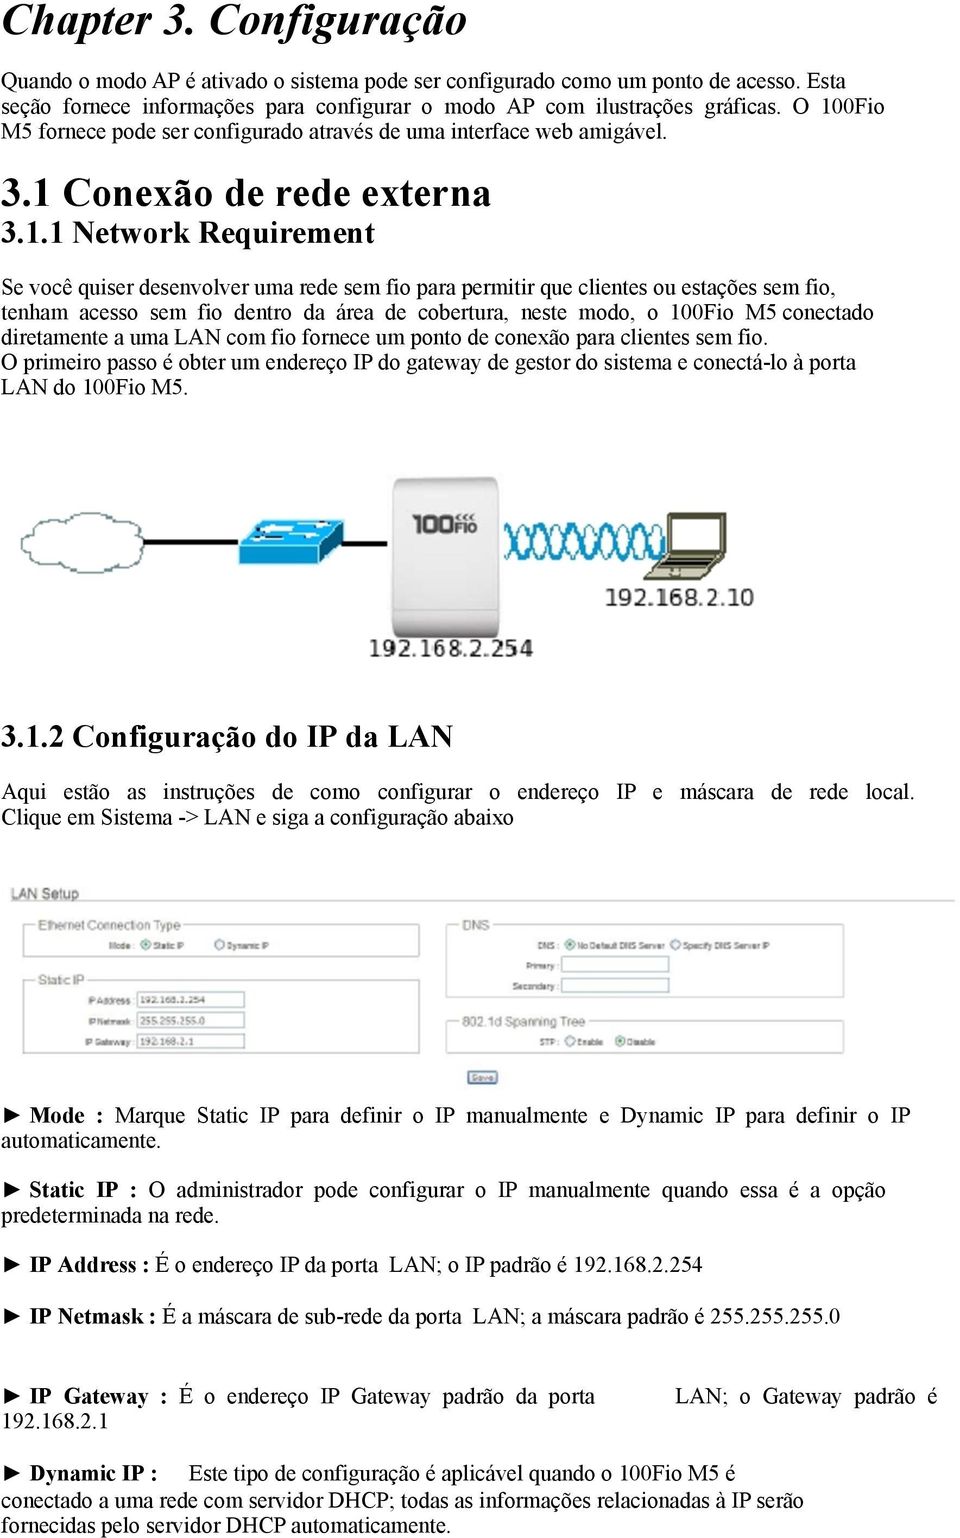 clientes ou estações sem fio, tenham acesso sem fio dentro da área de cobertura, neste modo, o 100Fio M5 conectado diretamente a uma LAN com fio fornece um ponto de conexão para clientes sem fio.